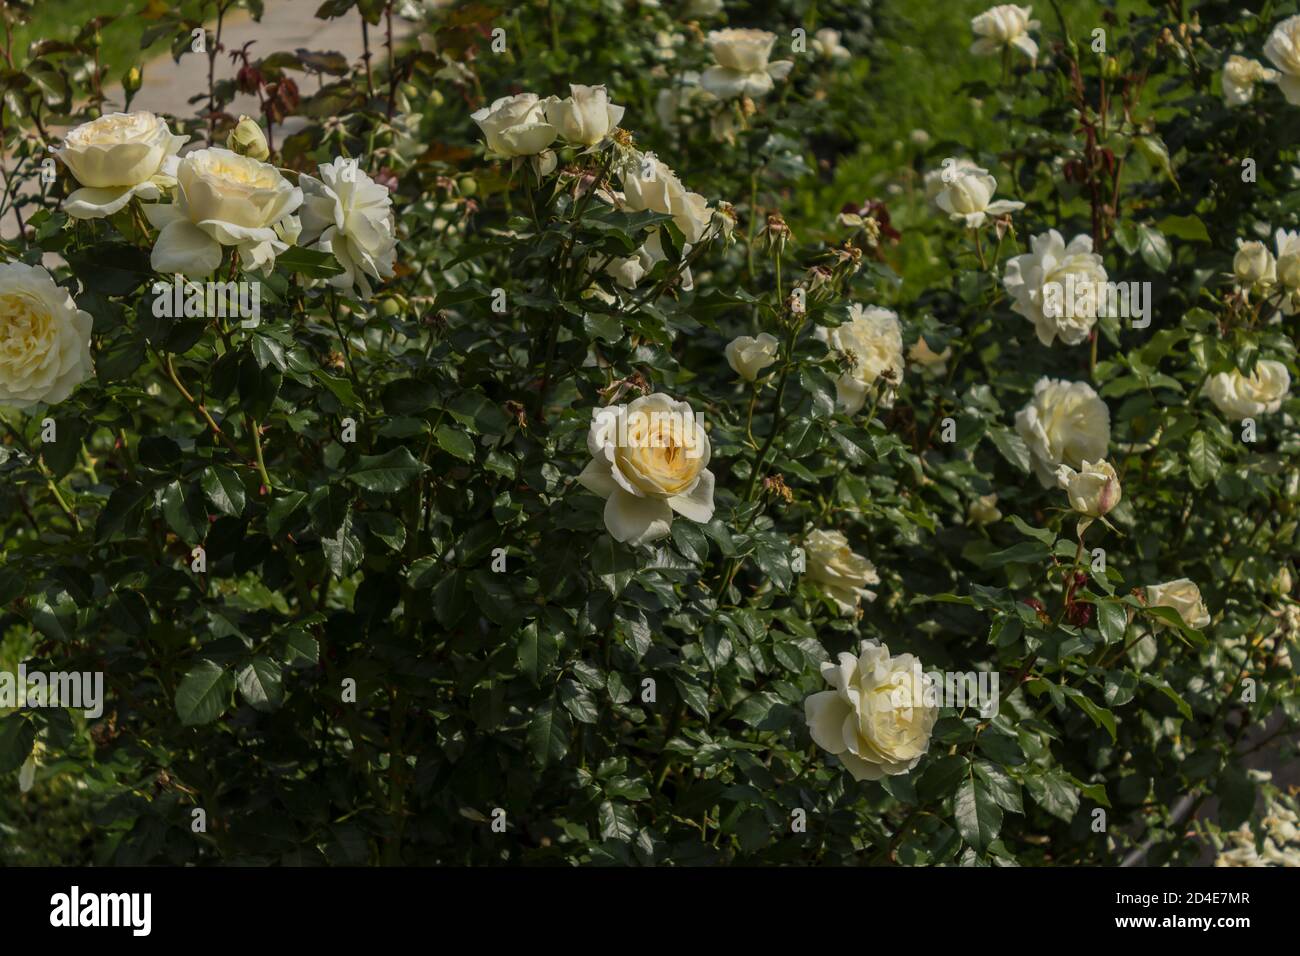 Fleurs roses blanches sur les buissons avec des feuilles vertes. Gros plan . Jardin botanique au milieu de l'été. Banque D'Images